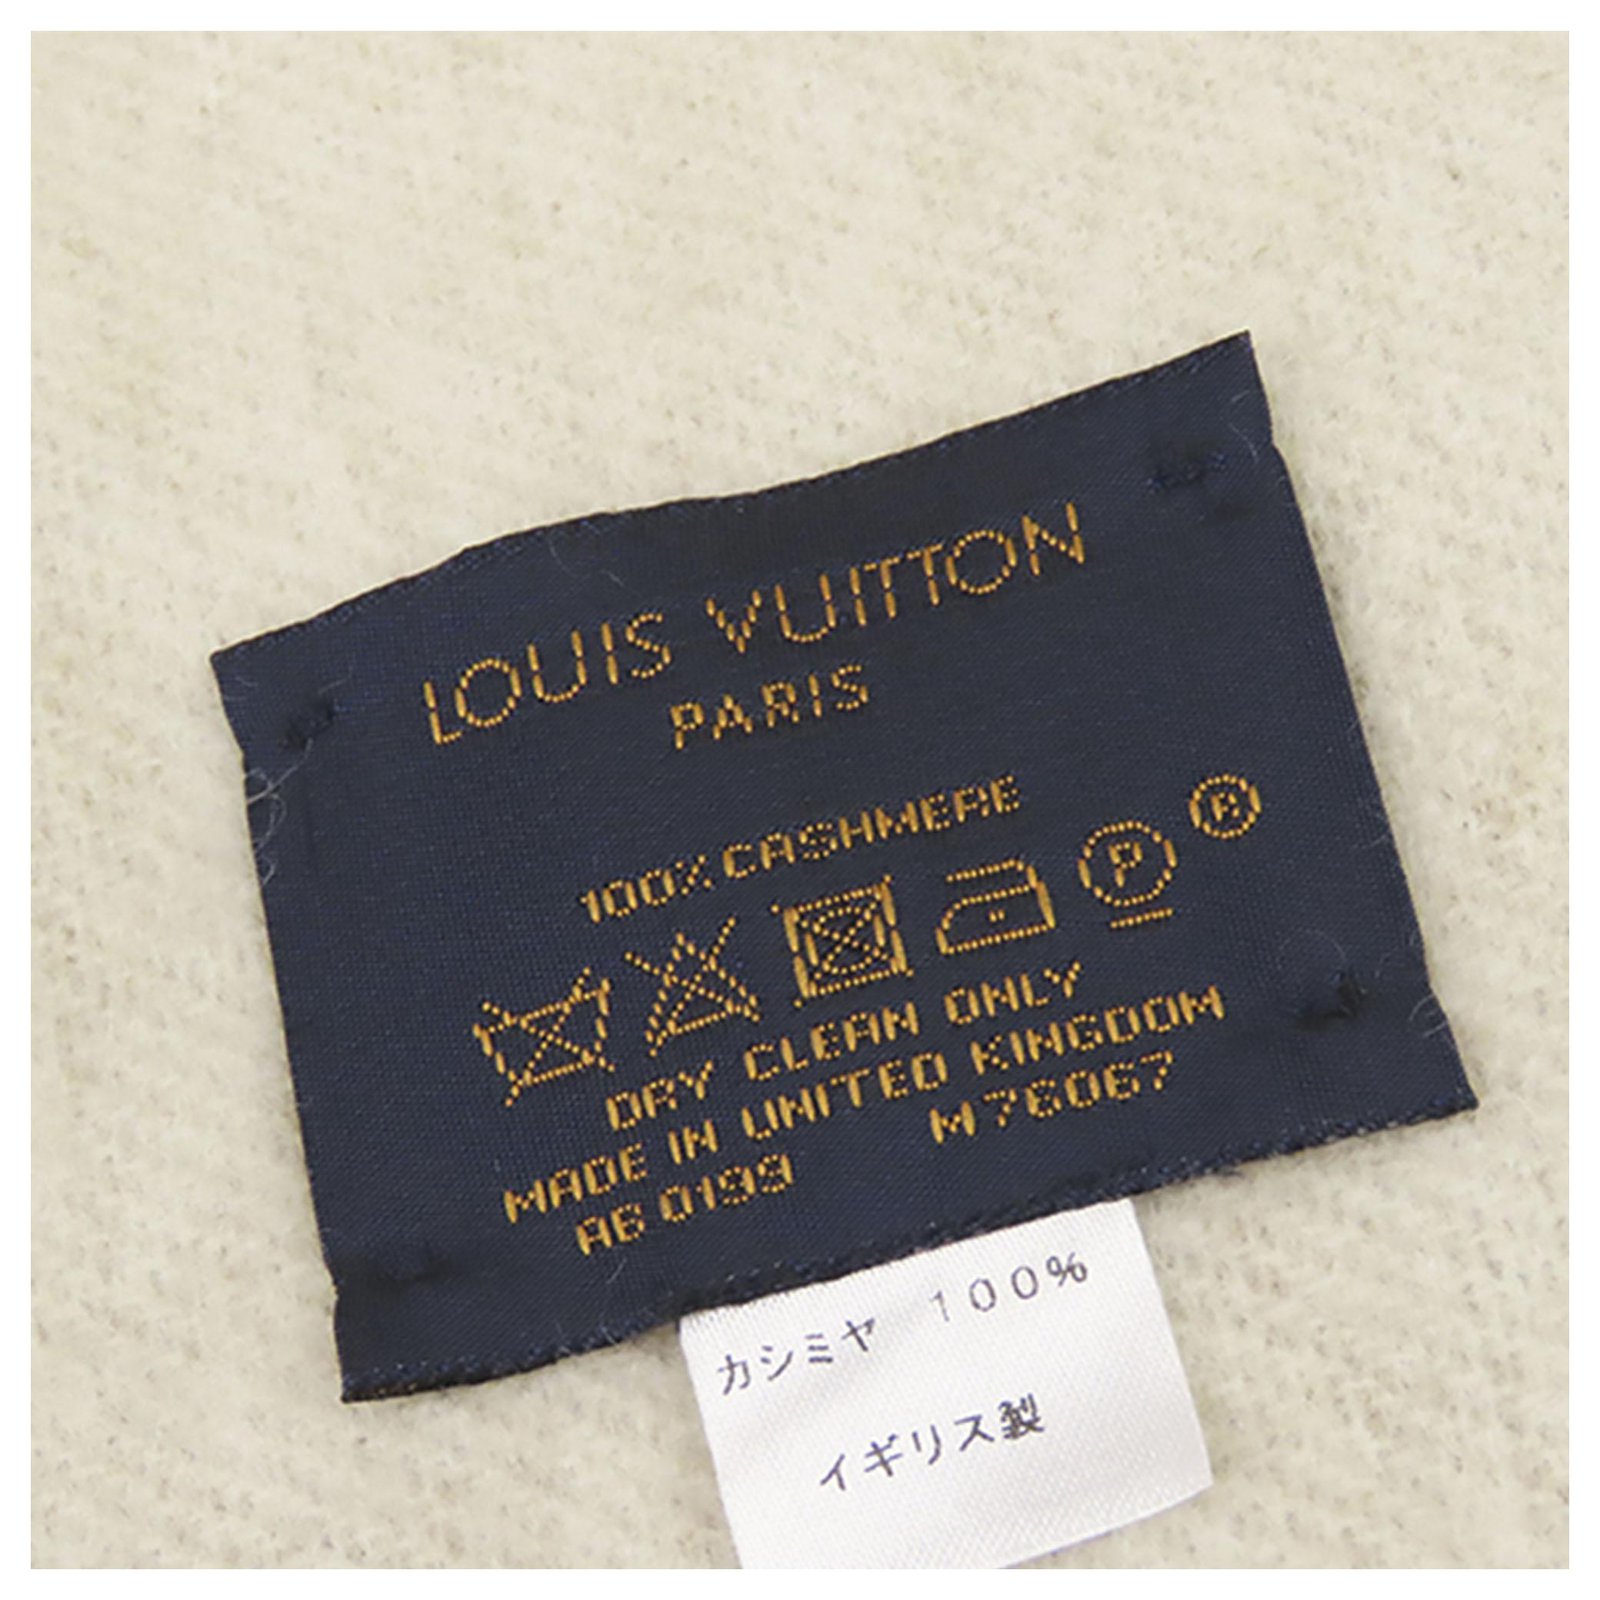 Louis Vuitton M76067 Reykjavik Scarf , Beige, One Size